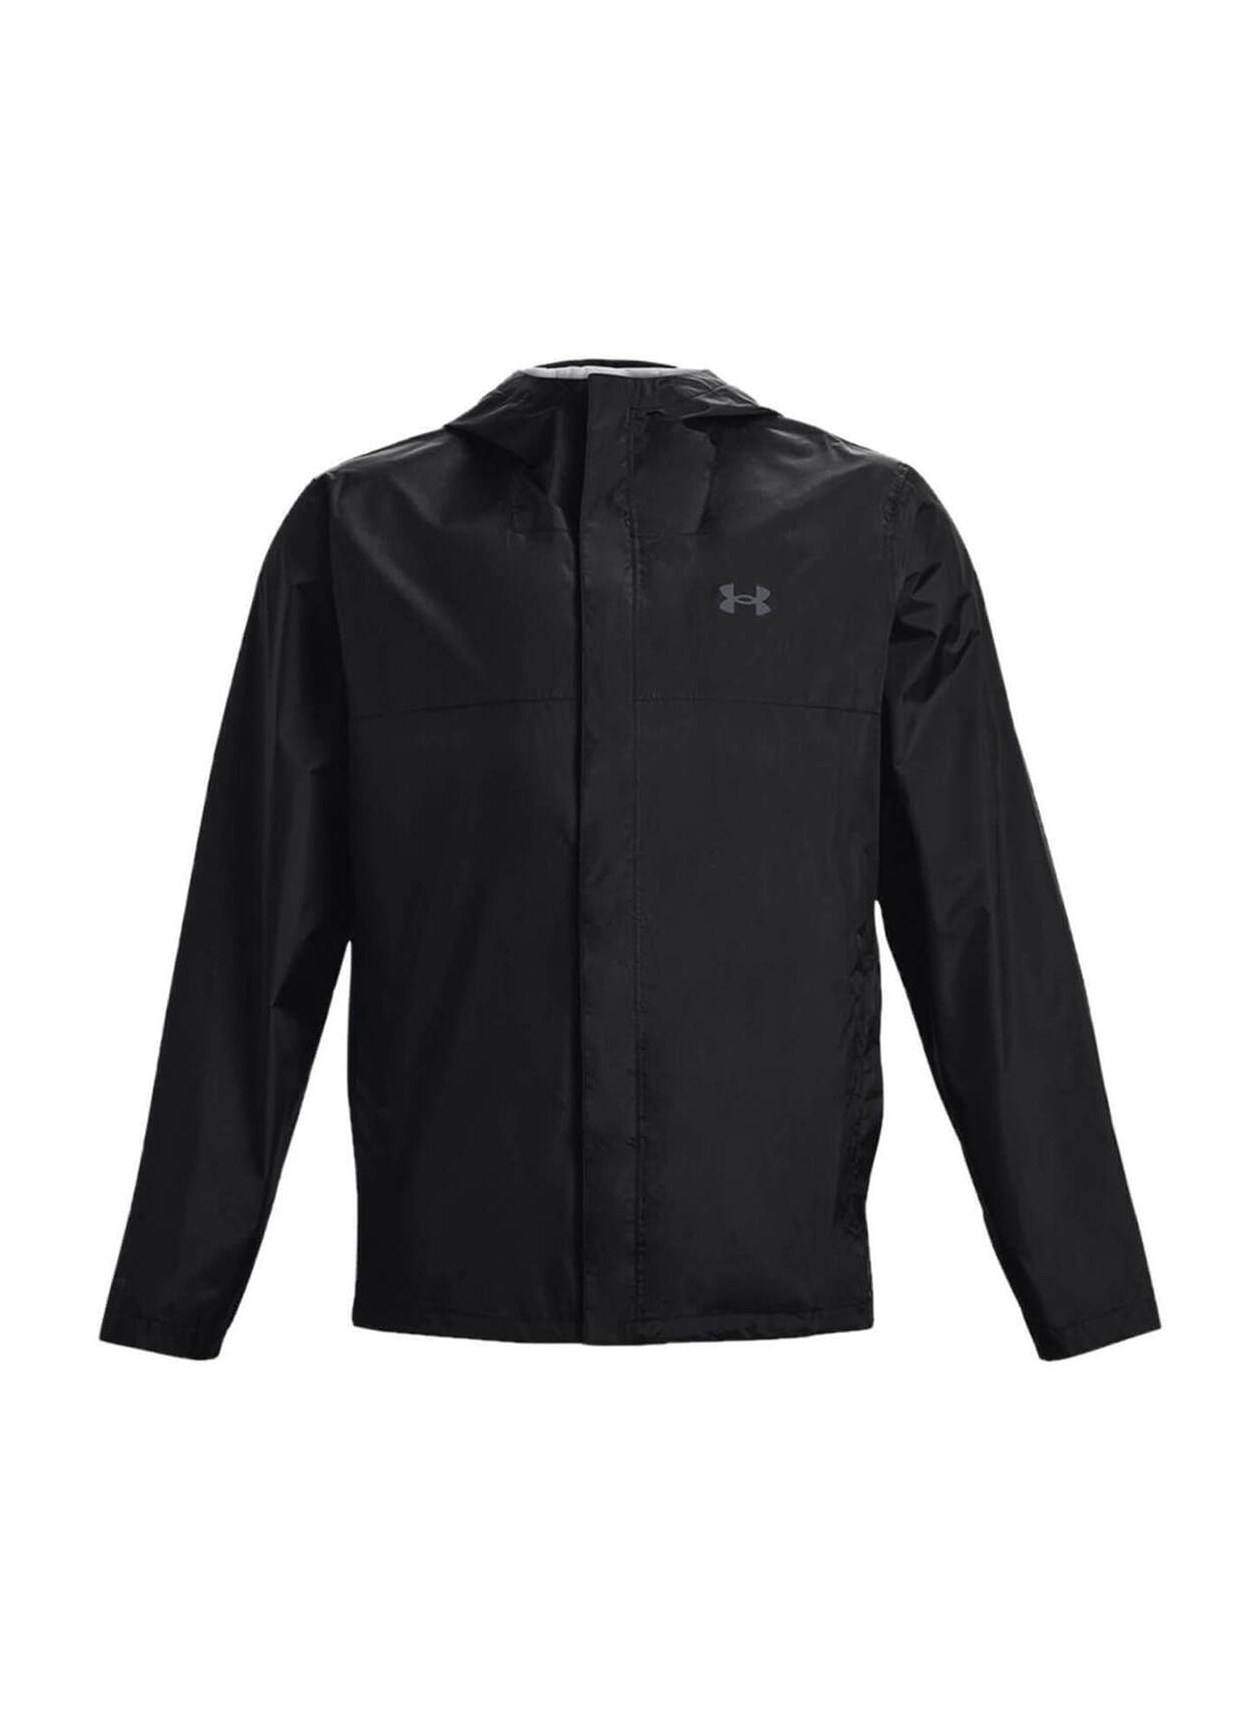 Corporate Under Armour Men's Black-Grey Cloudstrike 2.0 Jacket | Custom ...